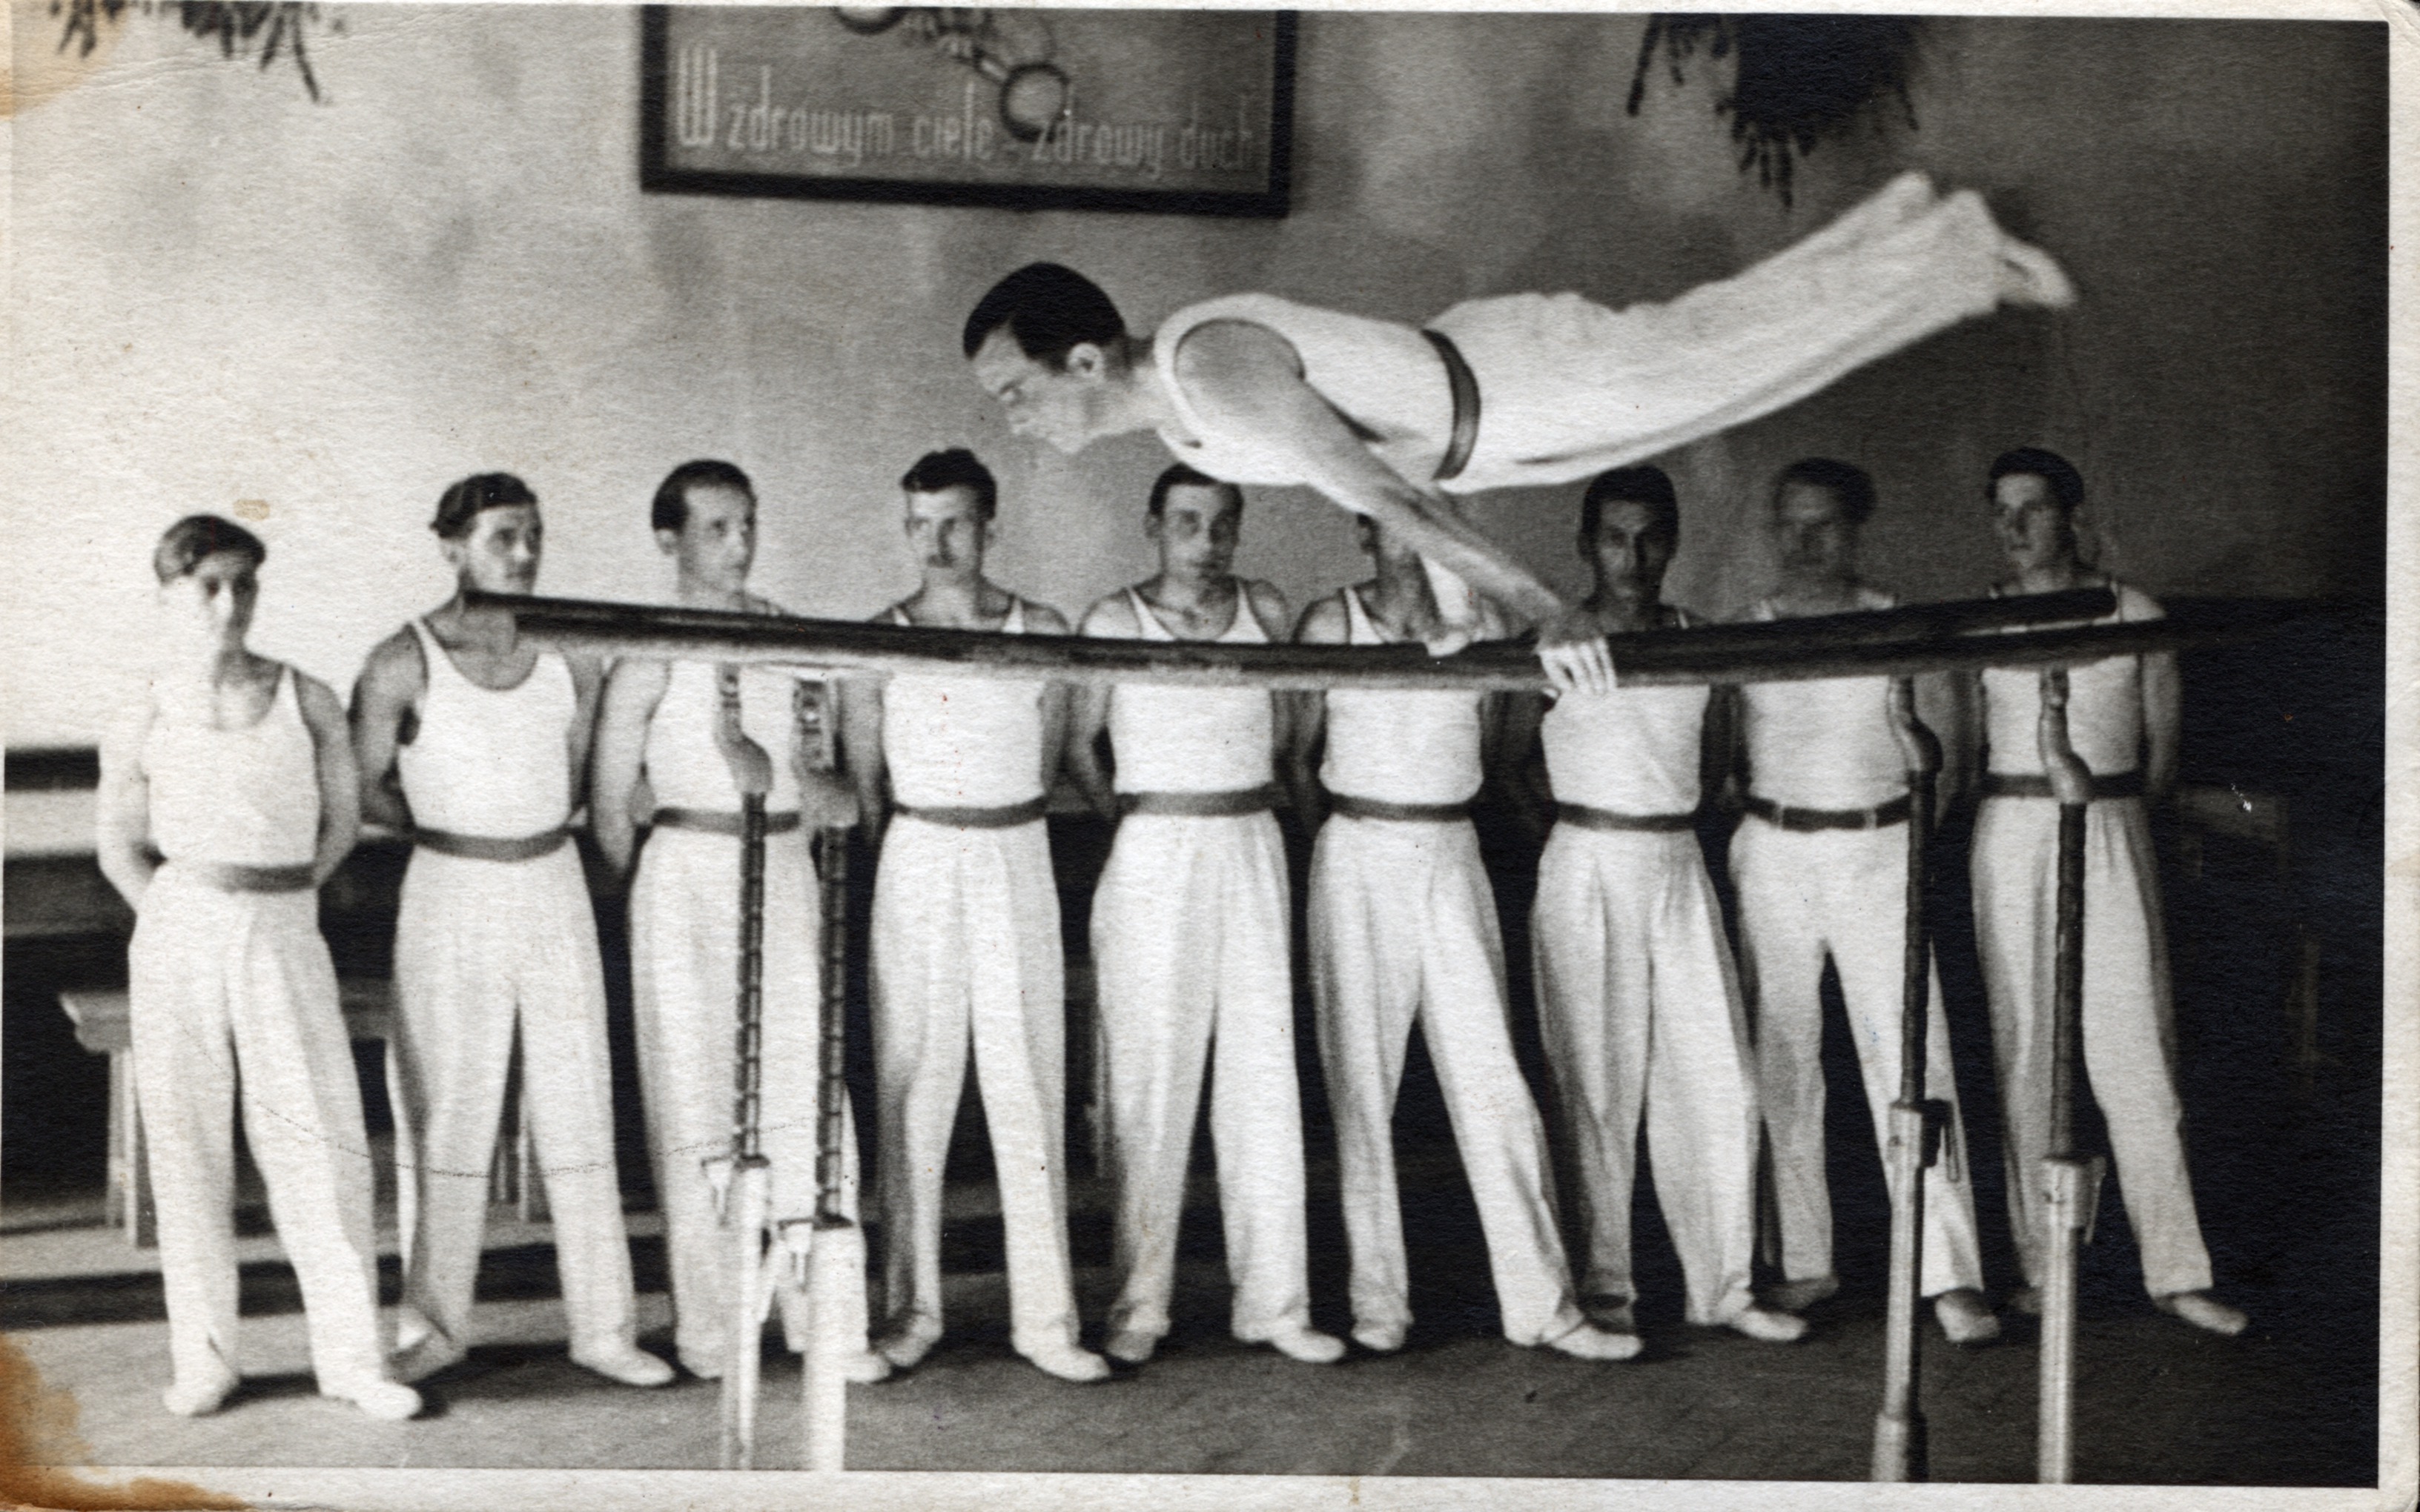 Czarno-białe zdjęcie z archiwum Muzeum Miasta Gdyni. Na zdjęciu widoczni są mężczyźni w białych strojach, którzy obserwują innego mężczyznę wykonującego akrobacje gimnastyczne na belkach.